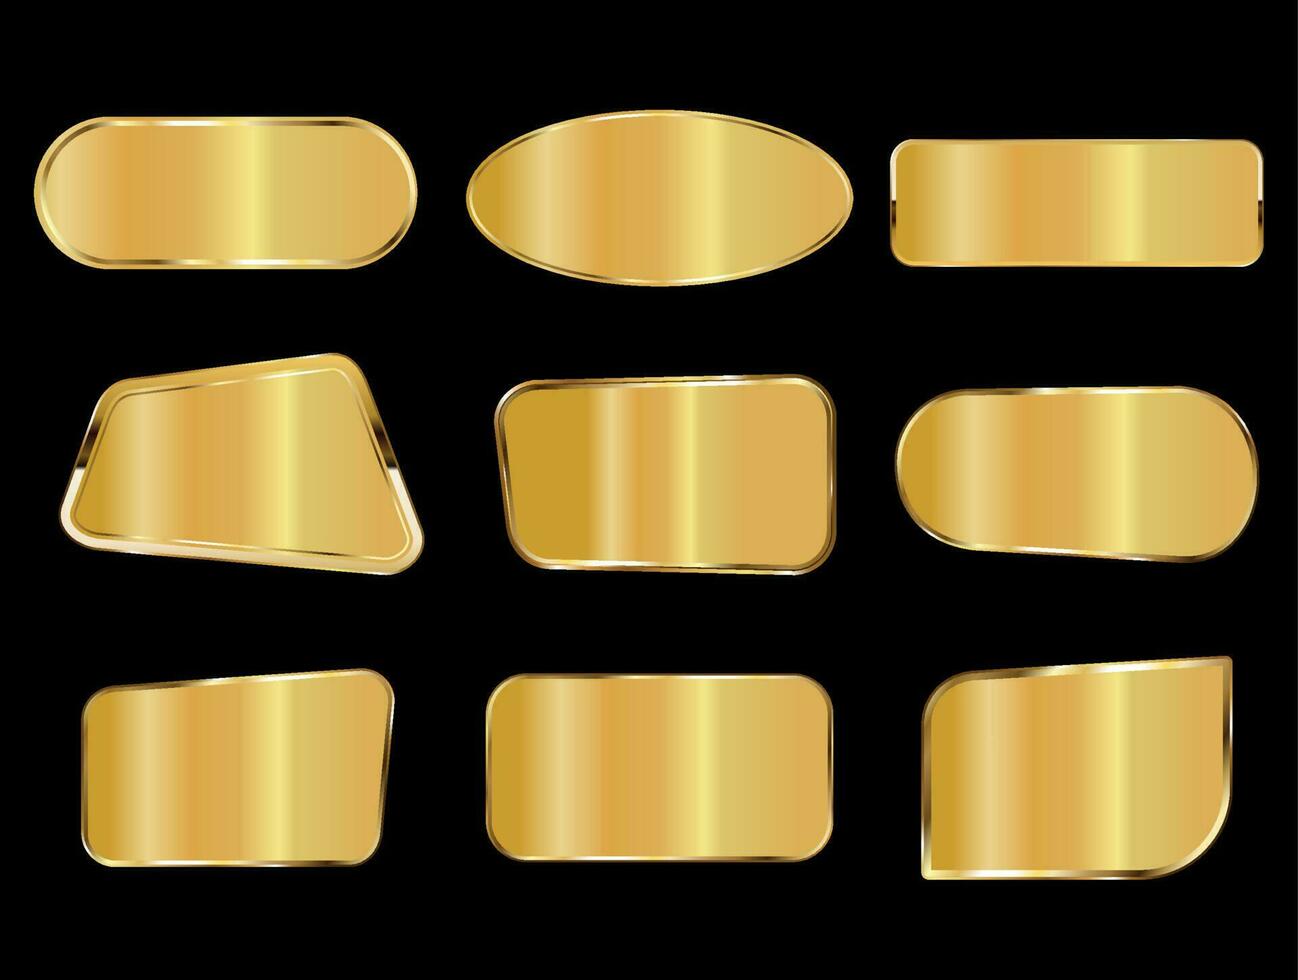 goldene metallplattensammlung auf schwarzem hintergrund vektor